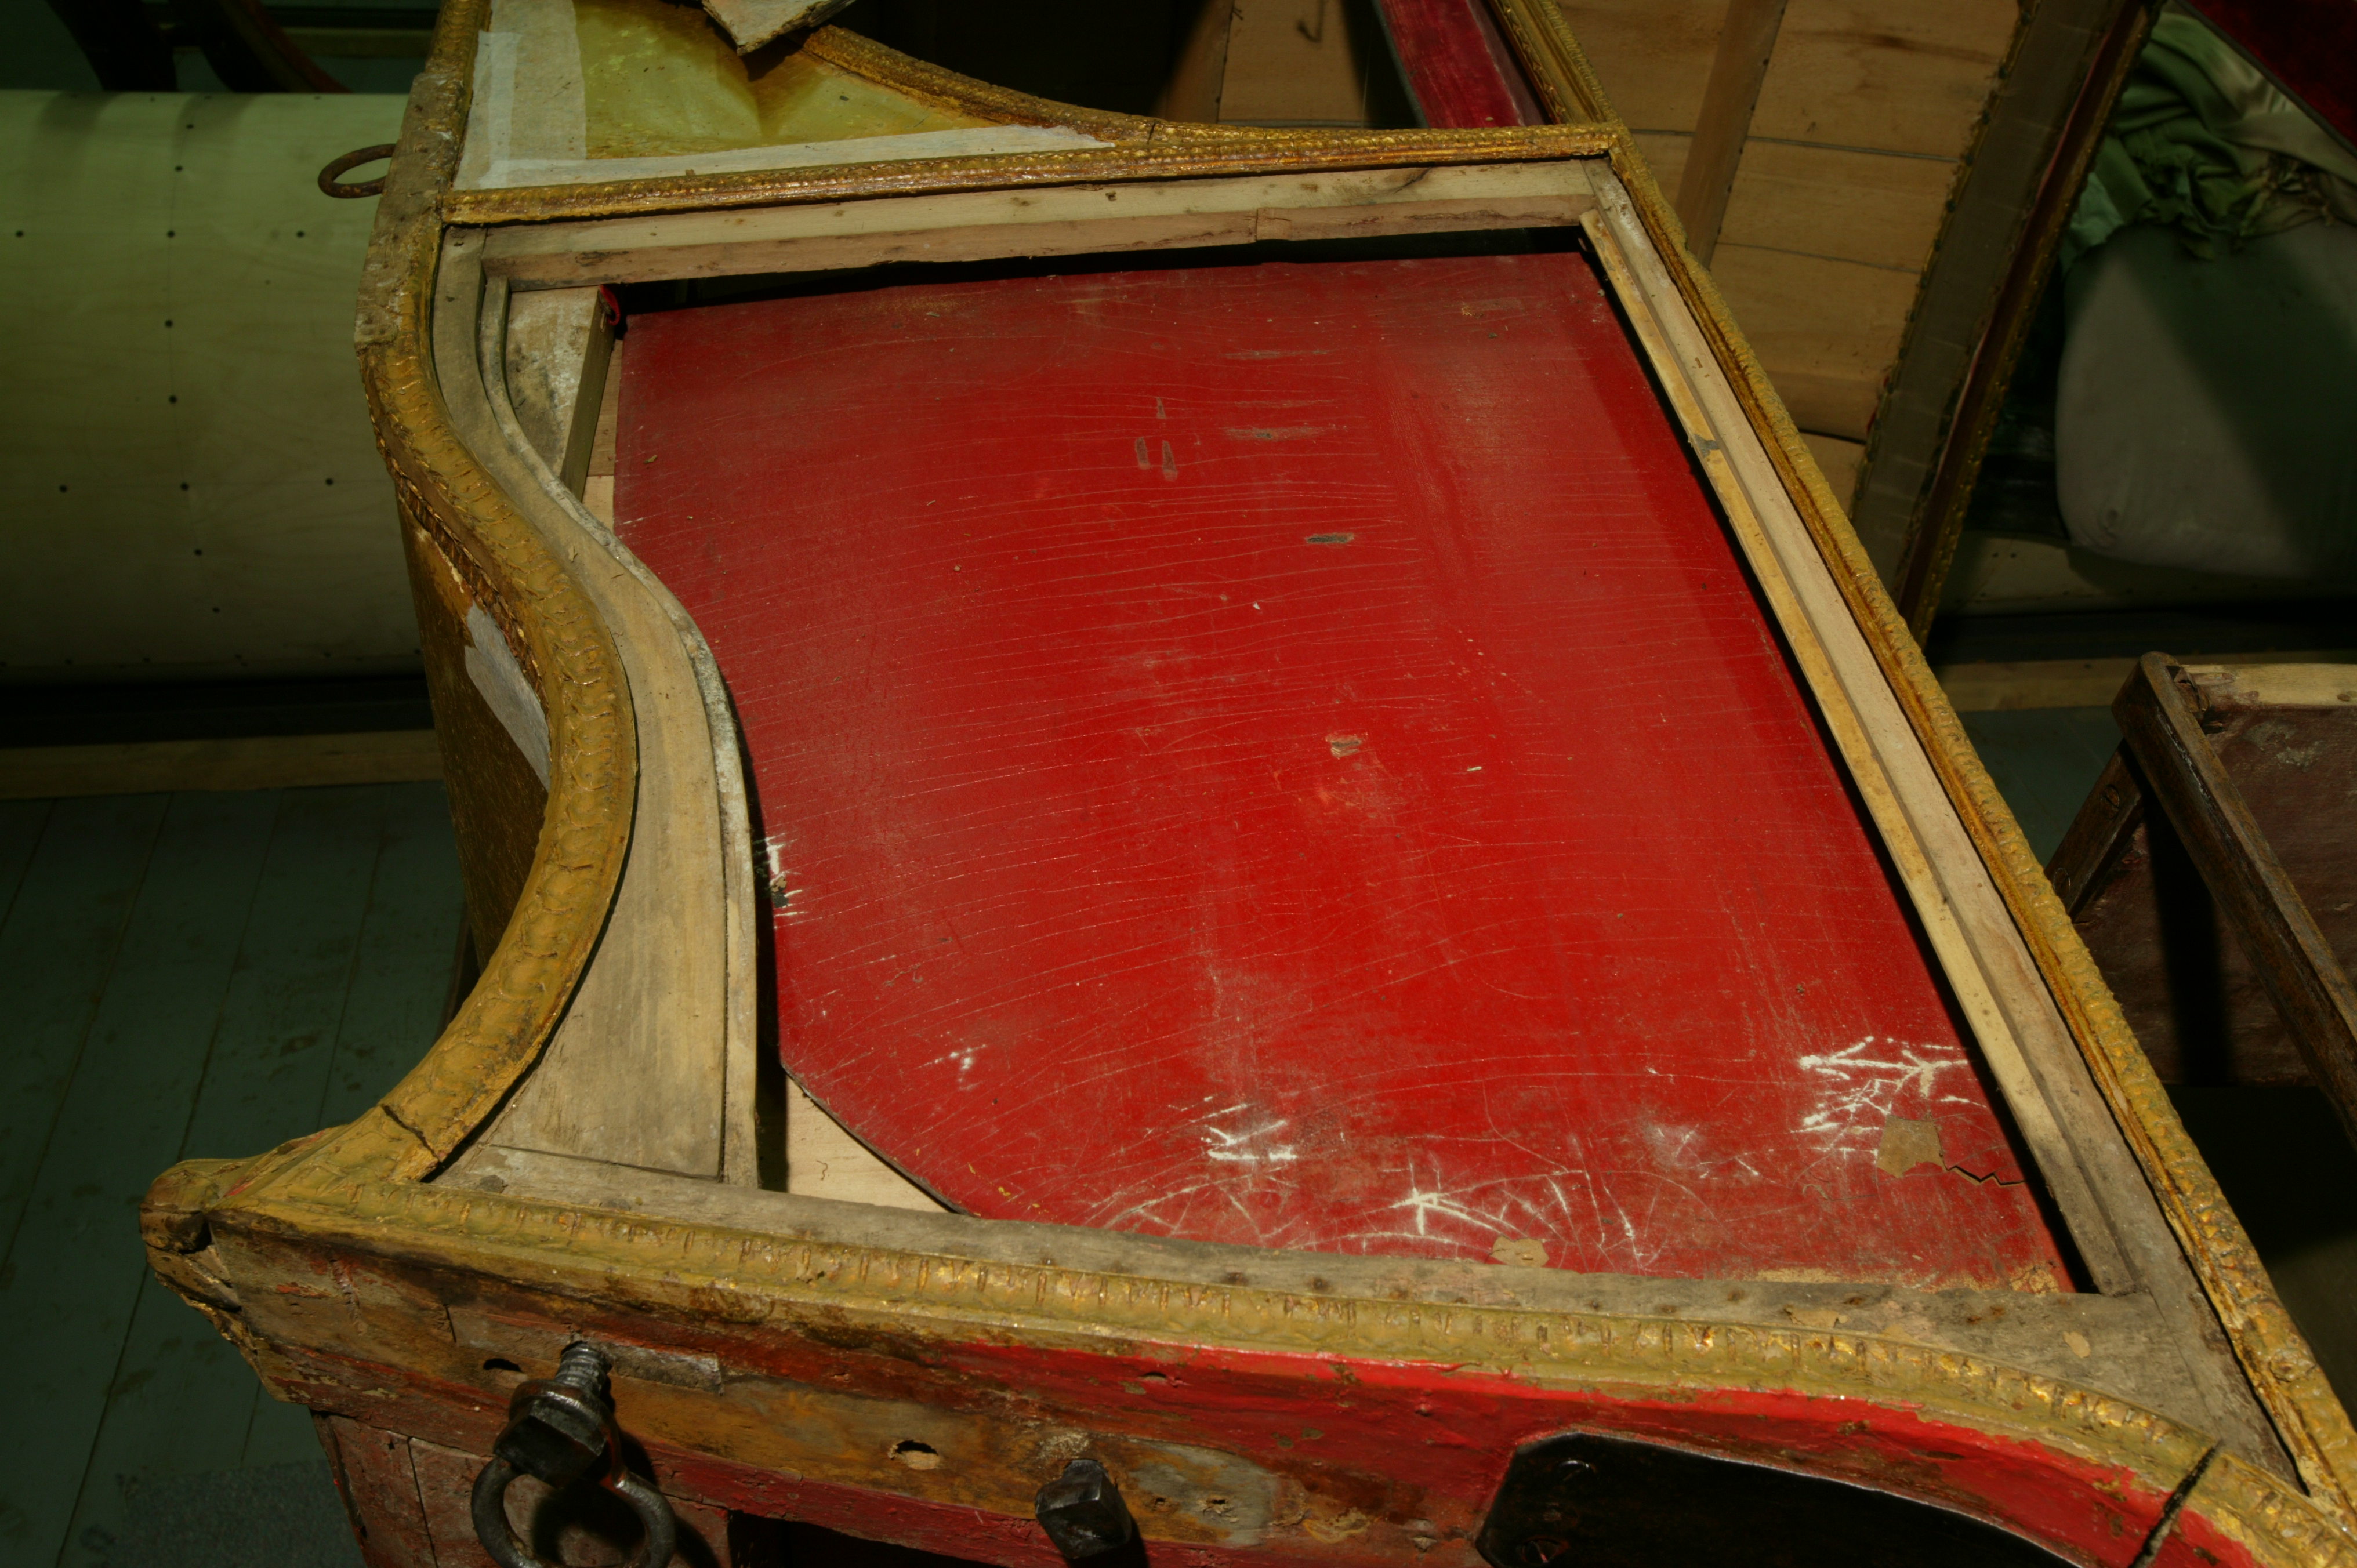 Фрагмент кузова кареты. Левая боковая филенка (стенка кузова) демонтирована, внутри – красная «шторка», которая может подниматься наверх, закрывая боковое стекло в салоне кареты. До реставрации. 2008 